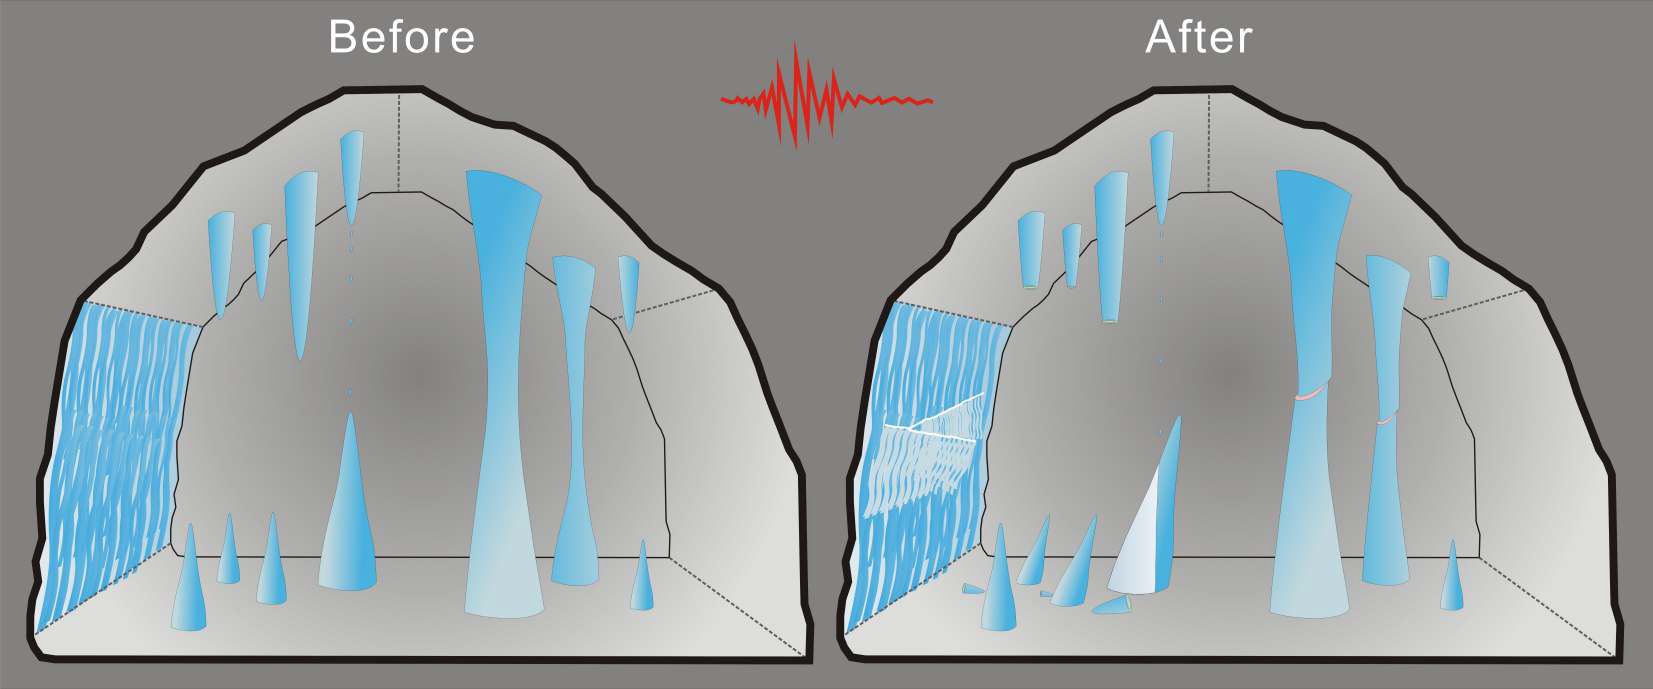 그림 2.1-11 고지진에 의한 성류굴 내 동굴생성물의 파괴특성